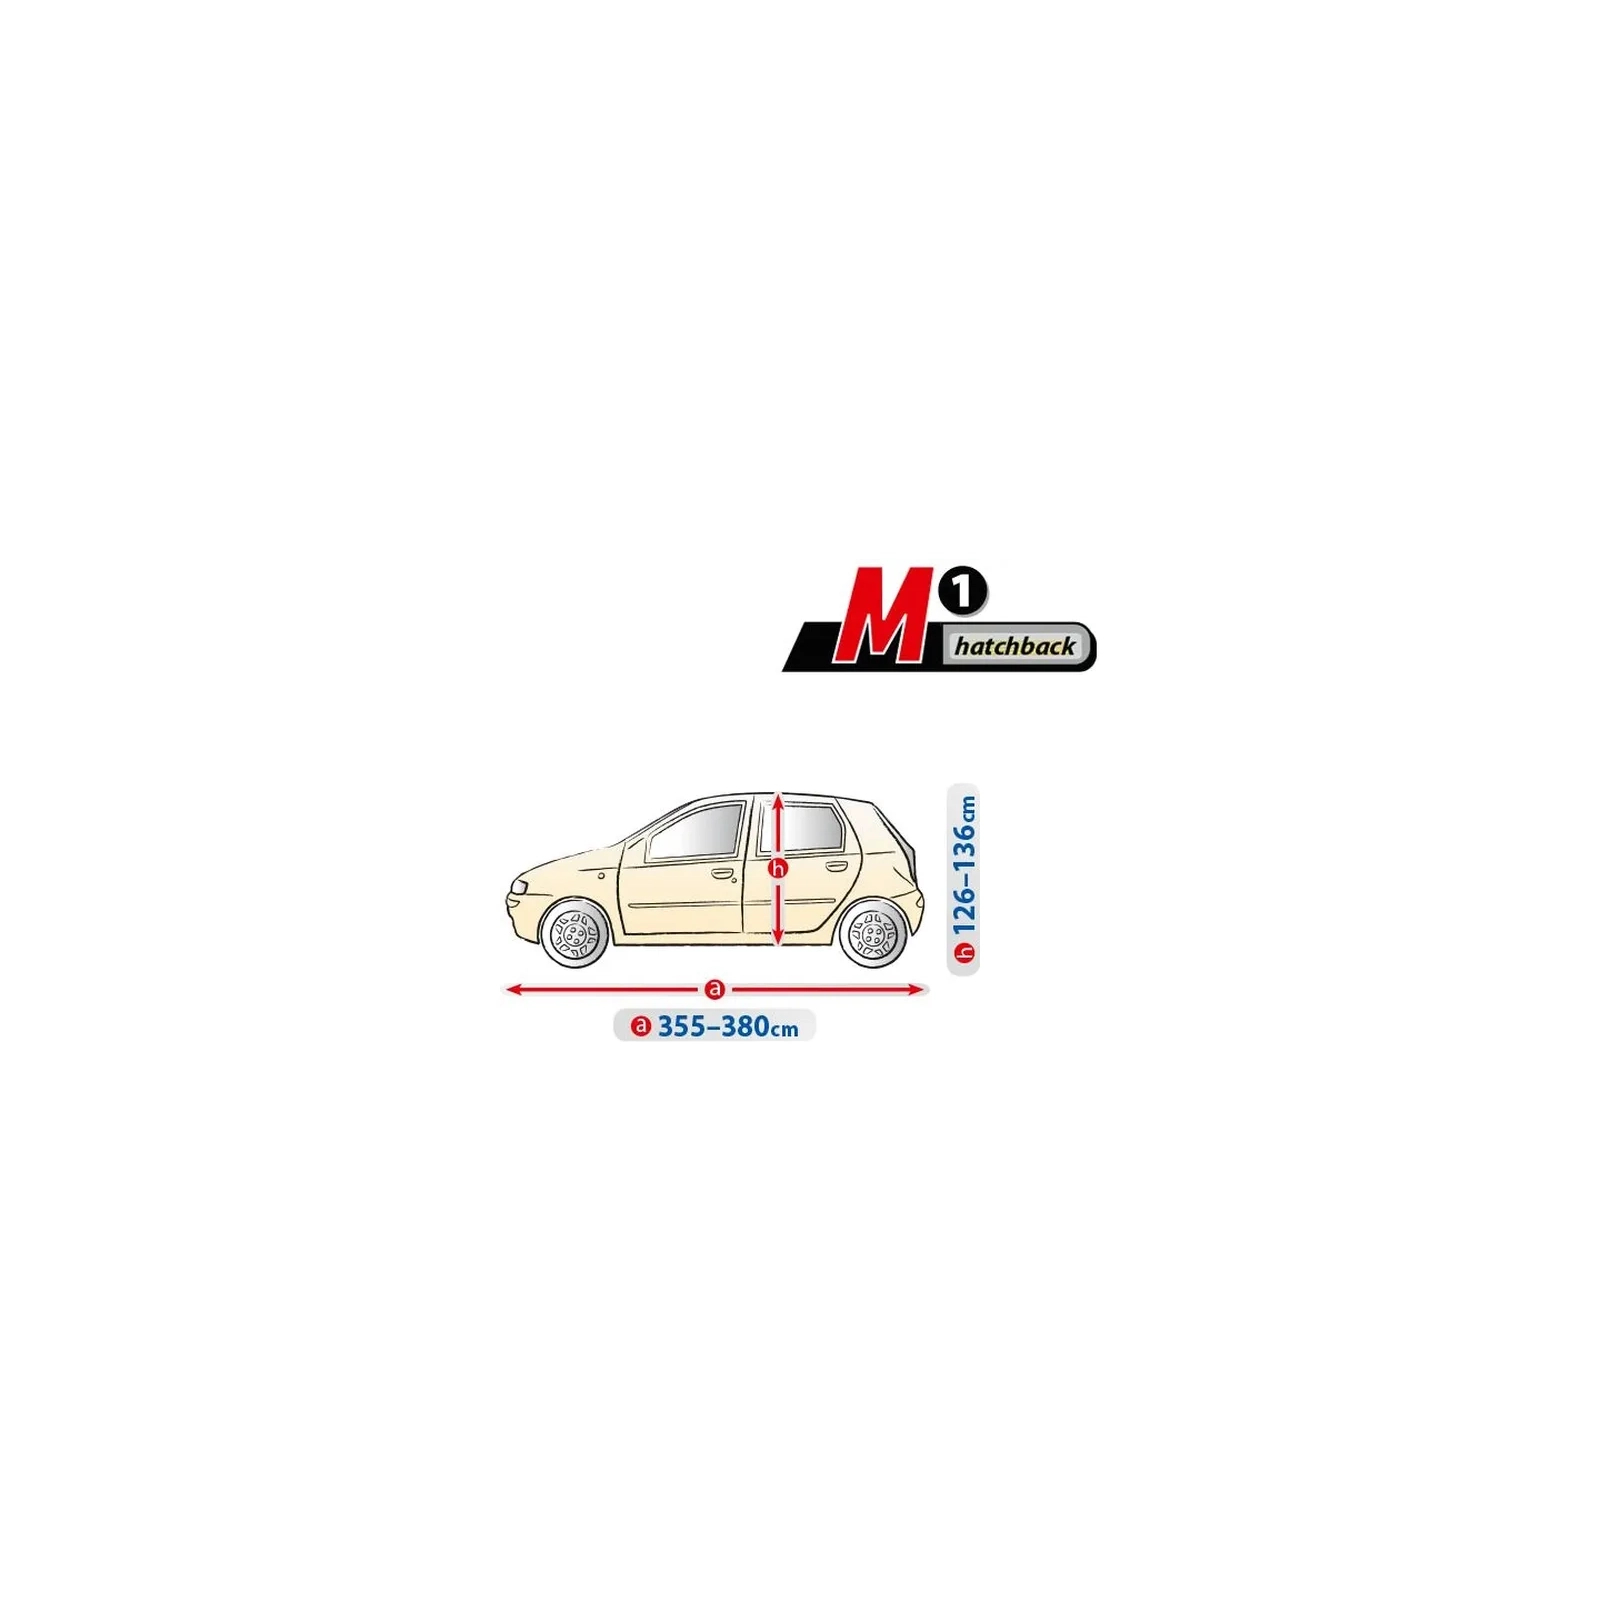 Тент автомобильный Kegel-Blazusiak "Optimal Garage" M1 hatchback (5-4313-241-2092) изображение 4